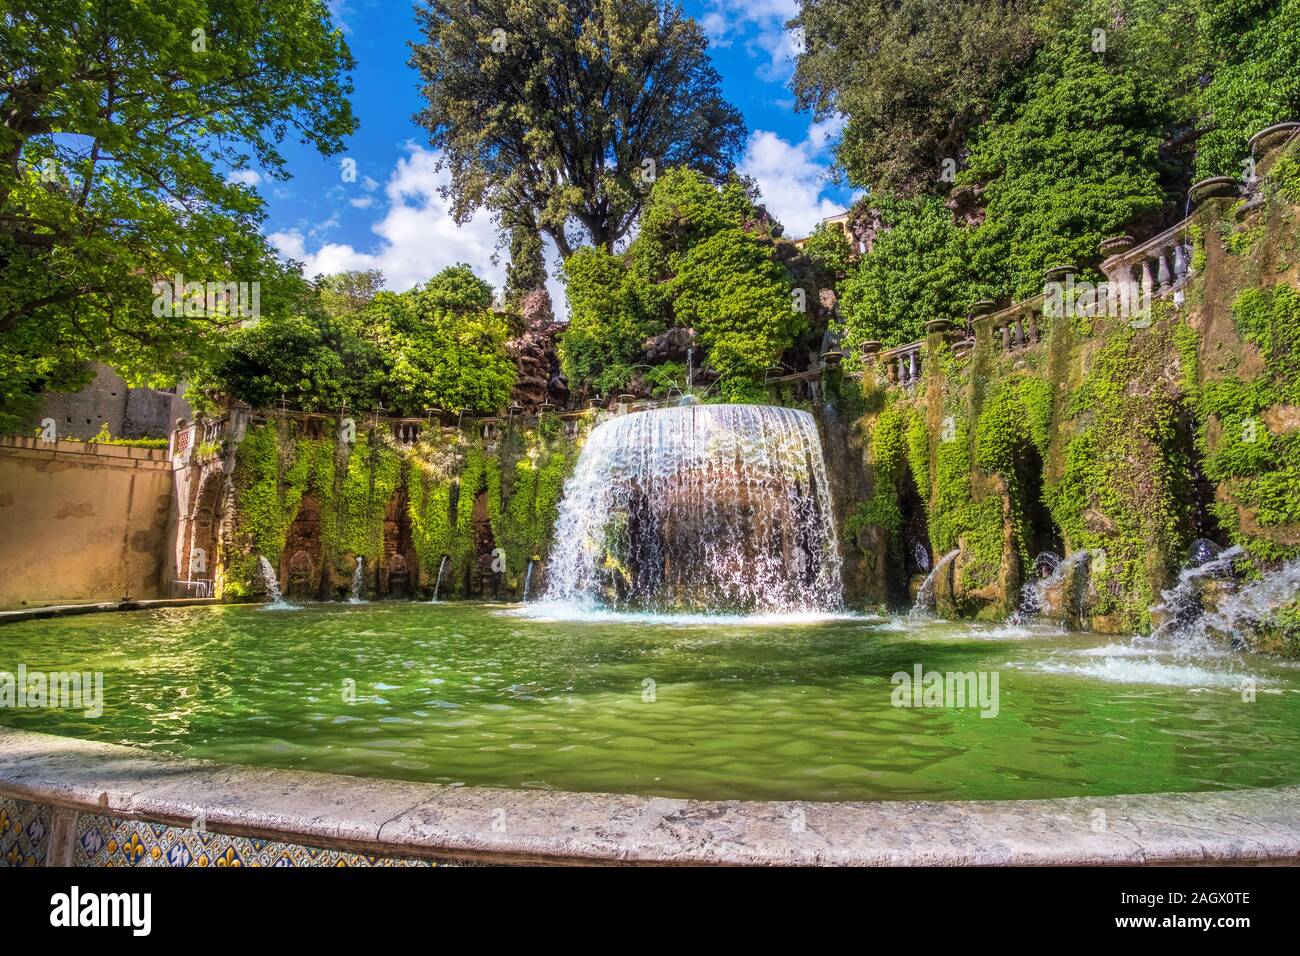 La regione Lazio i punti di riferimento - Villa D Este giardini - Fontana ovale o Fontana del ovato a Tivoli vicino Roma - Italia Foto Stock